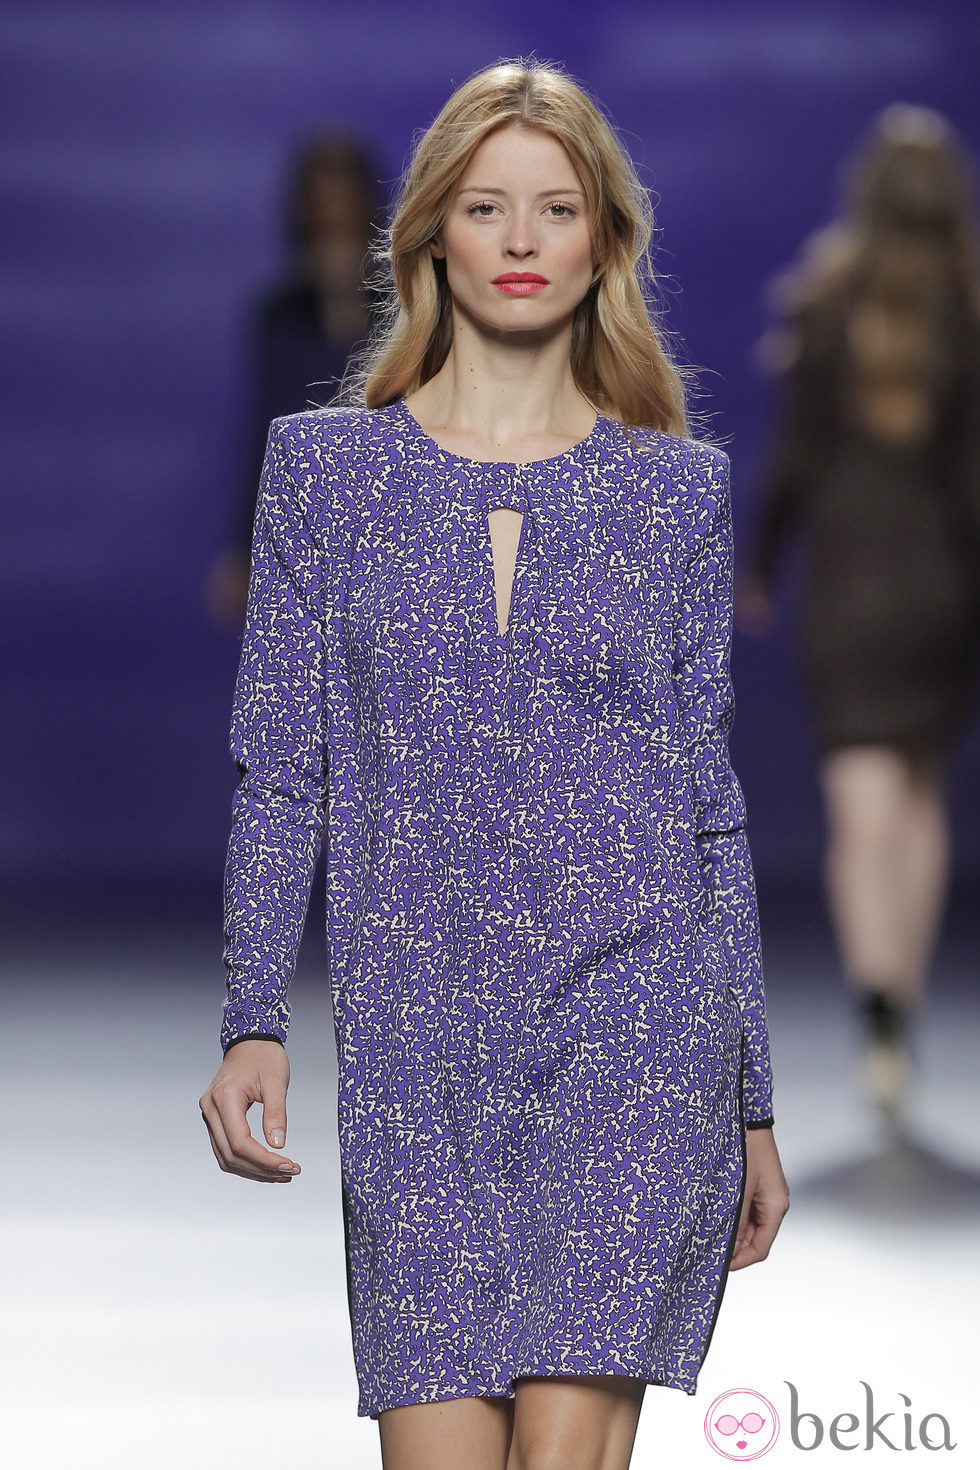 Vestido morado de la colección otoño/invierno 2013/2014 de Sita Murt en Madrid Fashion Week